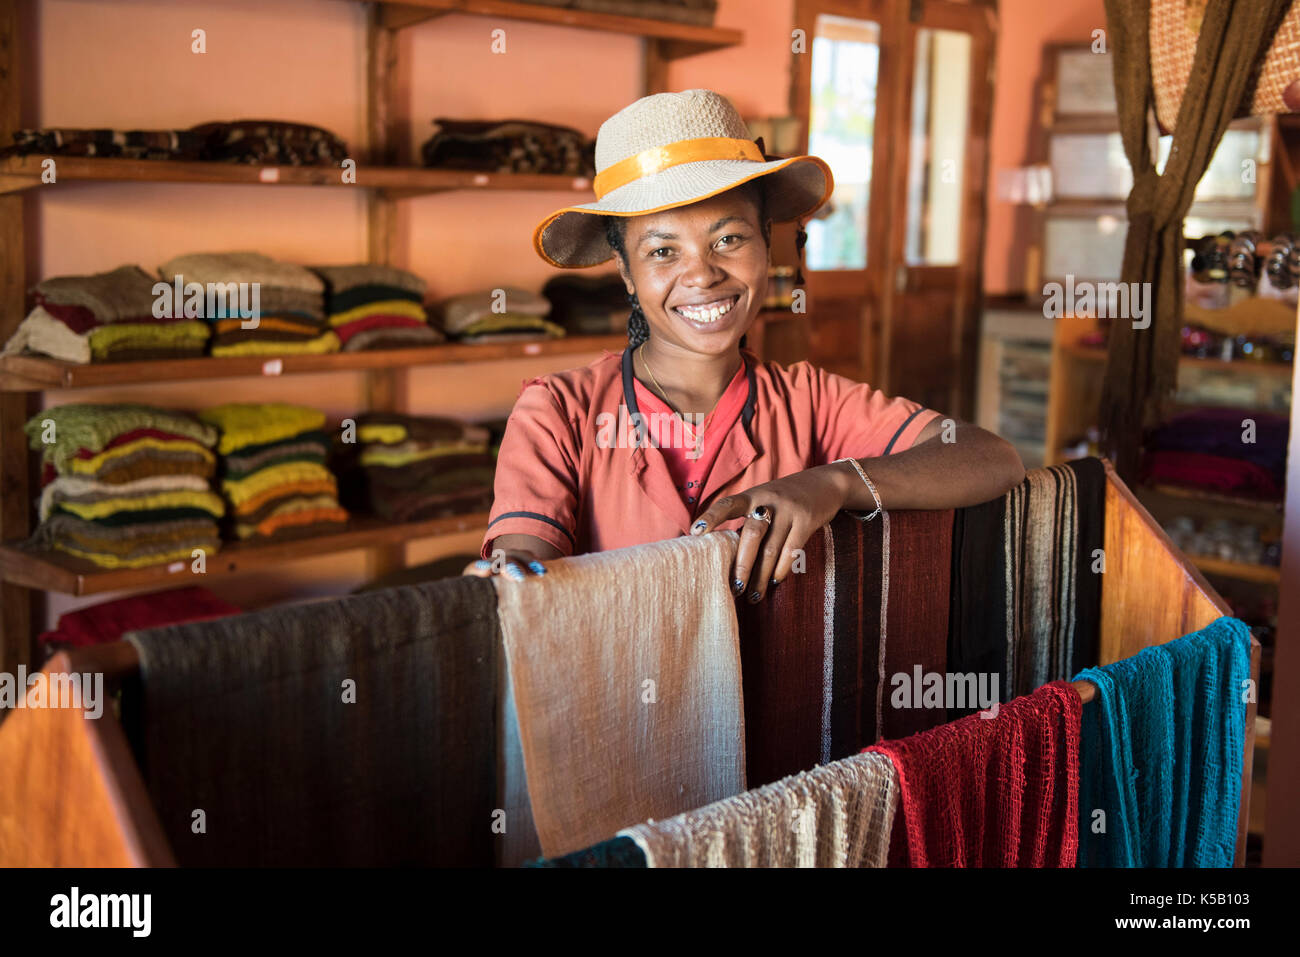 Foulards en soie en vente à l'atelier de la soie sauvage Soalandy, Ambalavao, Madagascar Banque D'Images